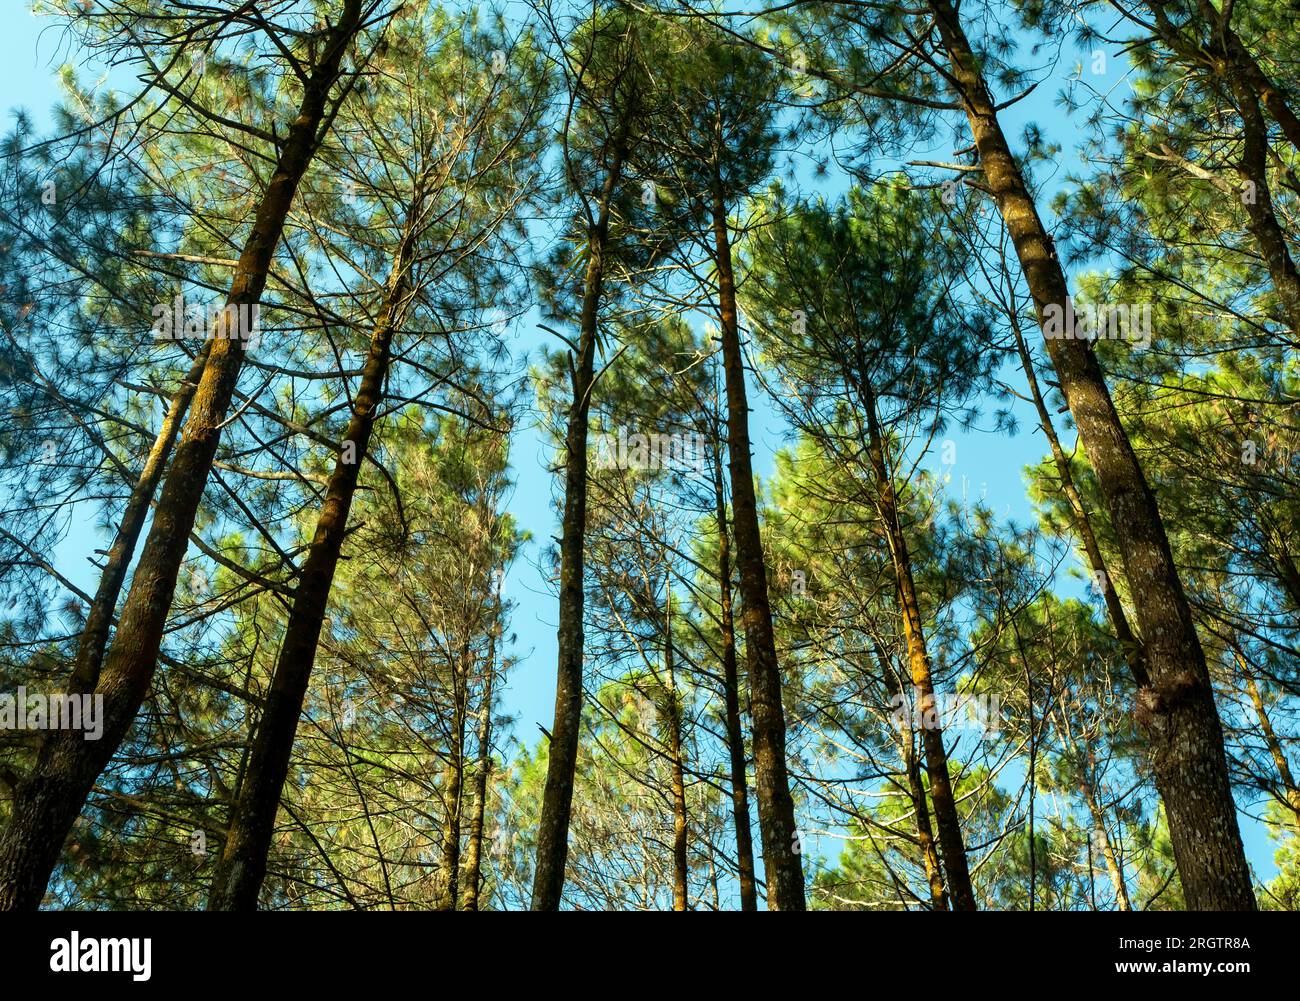 Pinus merkusii, the Merkus pine or Sumatran pine canopy, natural forest background. Stock Photo